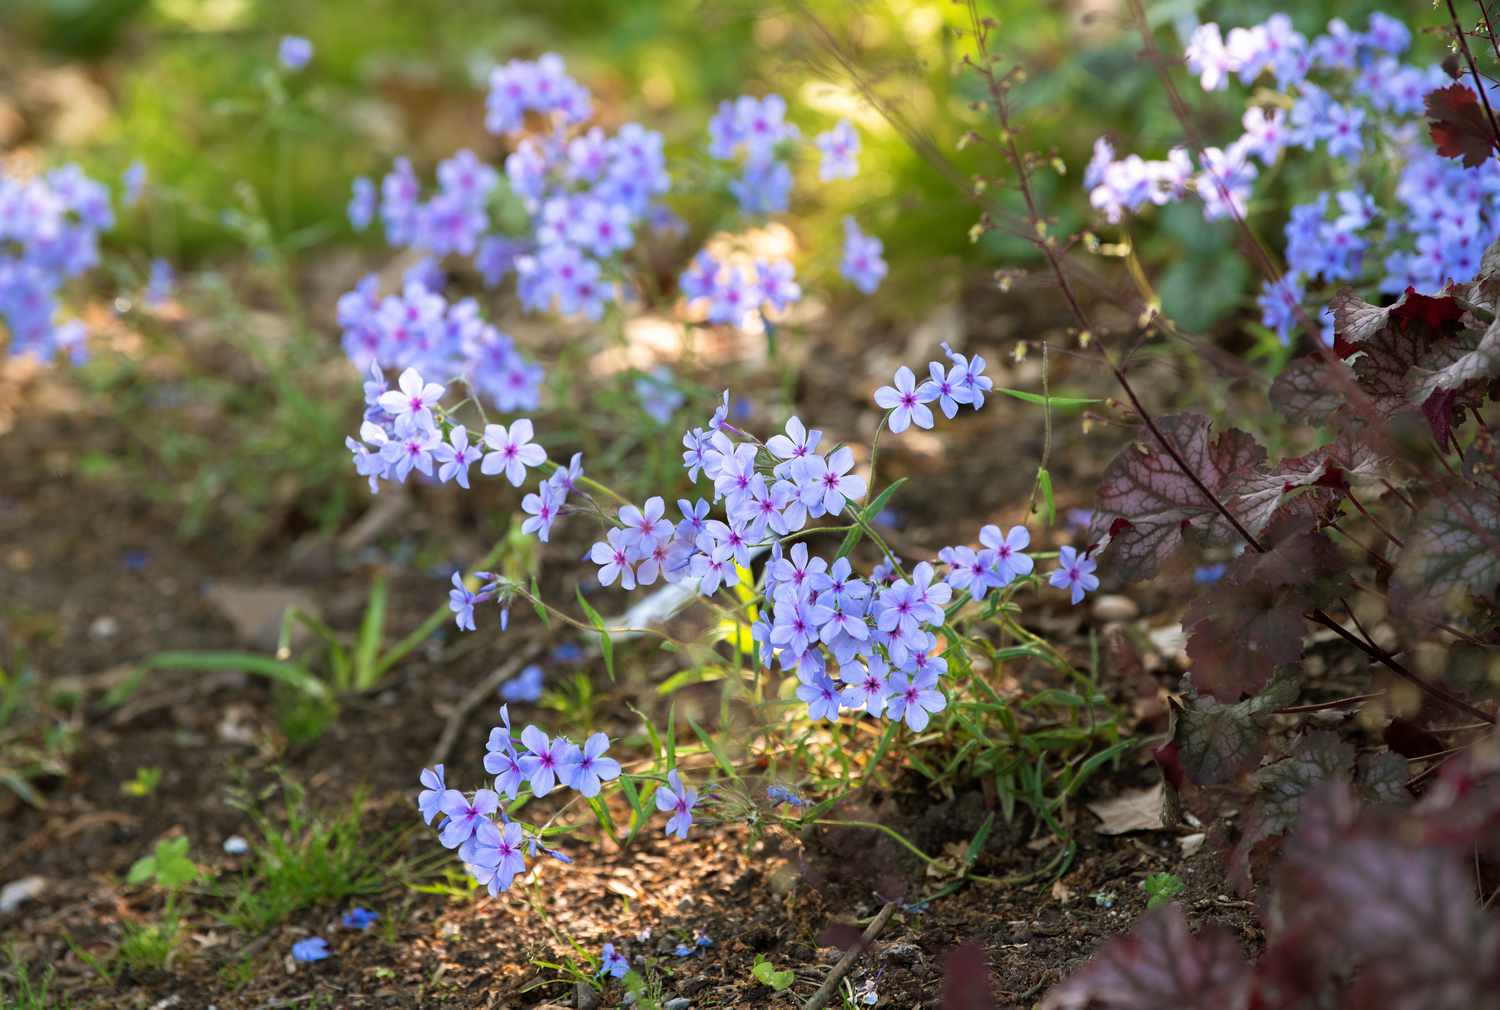 Waldphlox-Pflanze mit hellvioletten Blütentrauben in Erde und Grasfläche